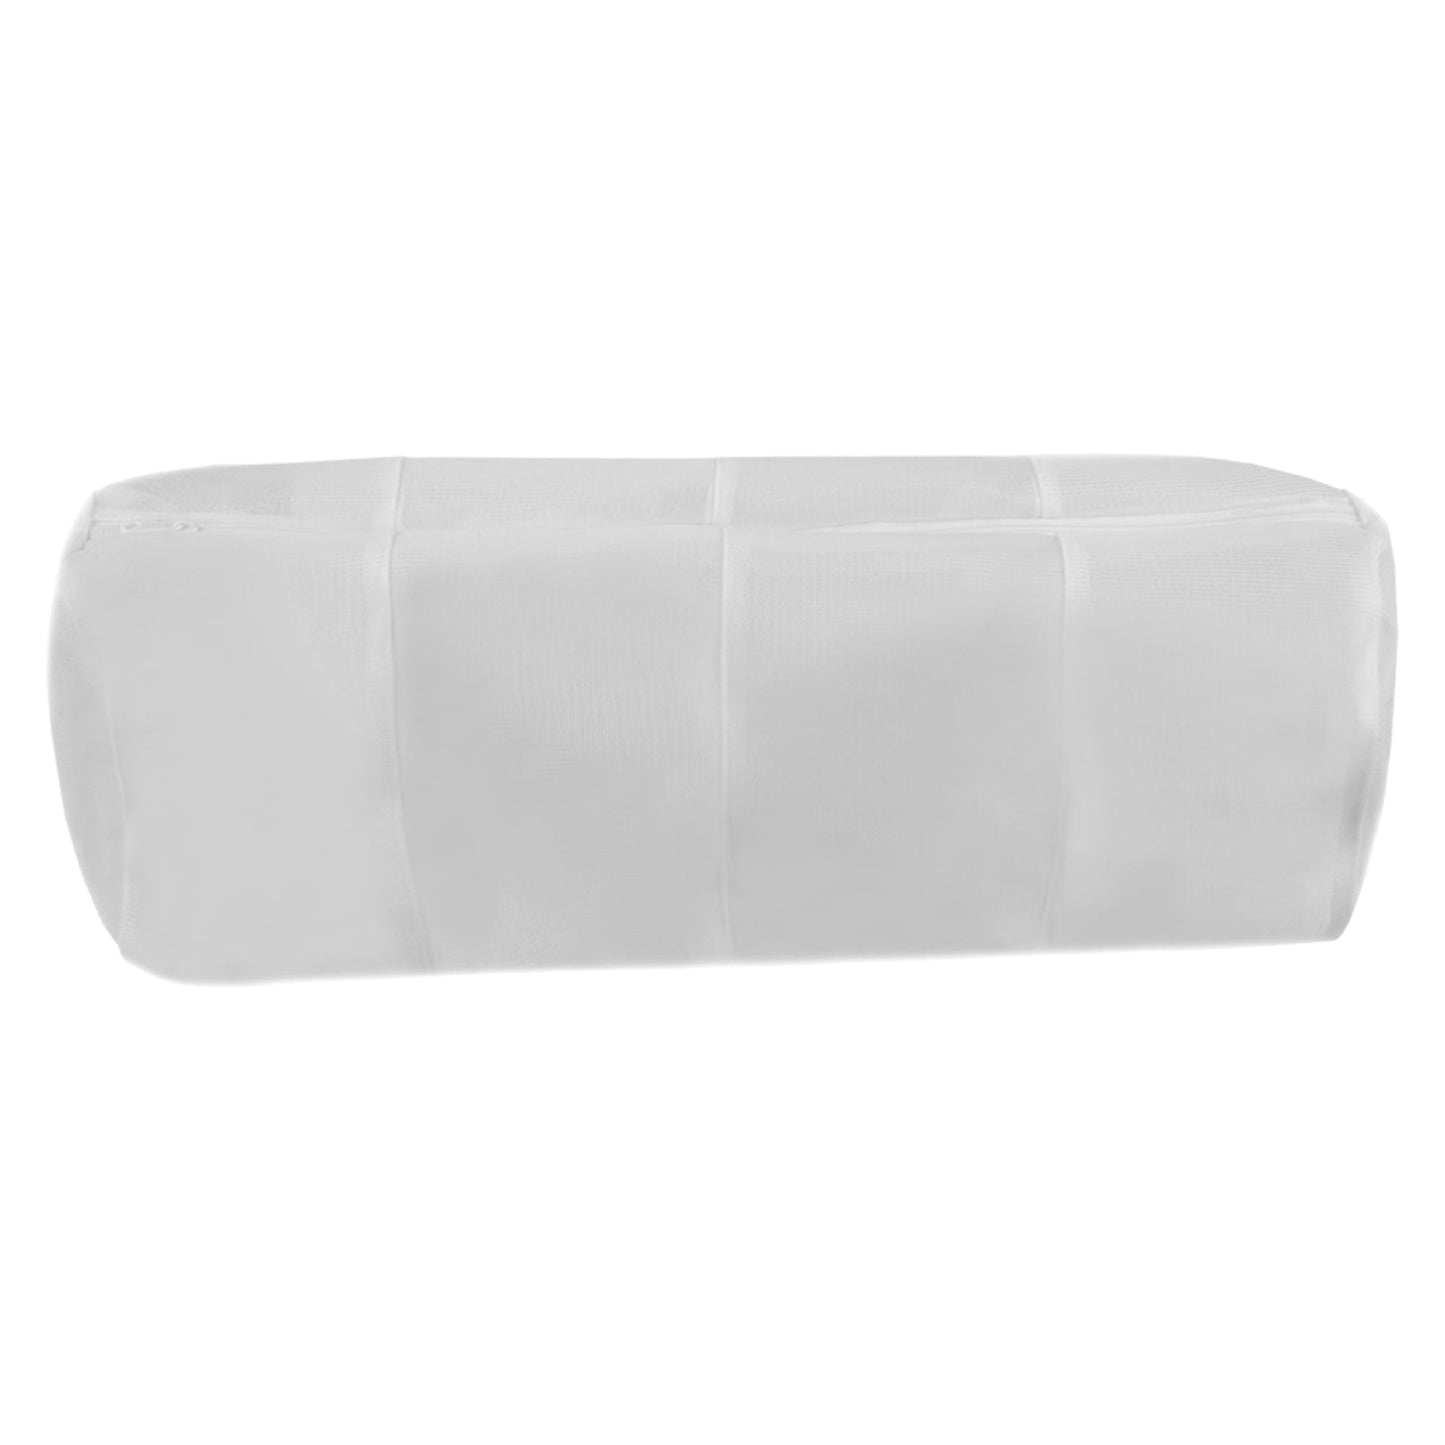 4 Compartment Micro Mesh Wash Bag, White